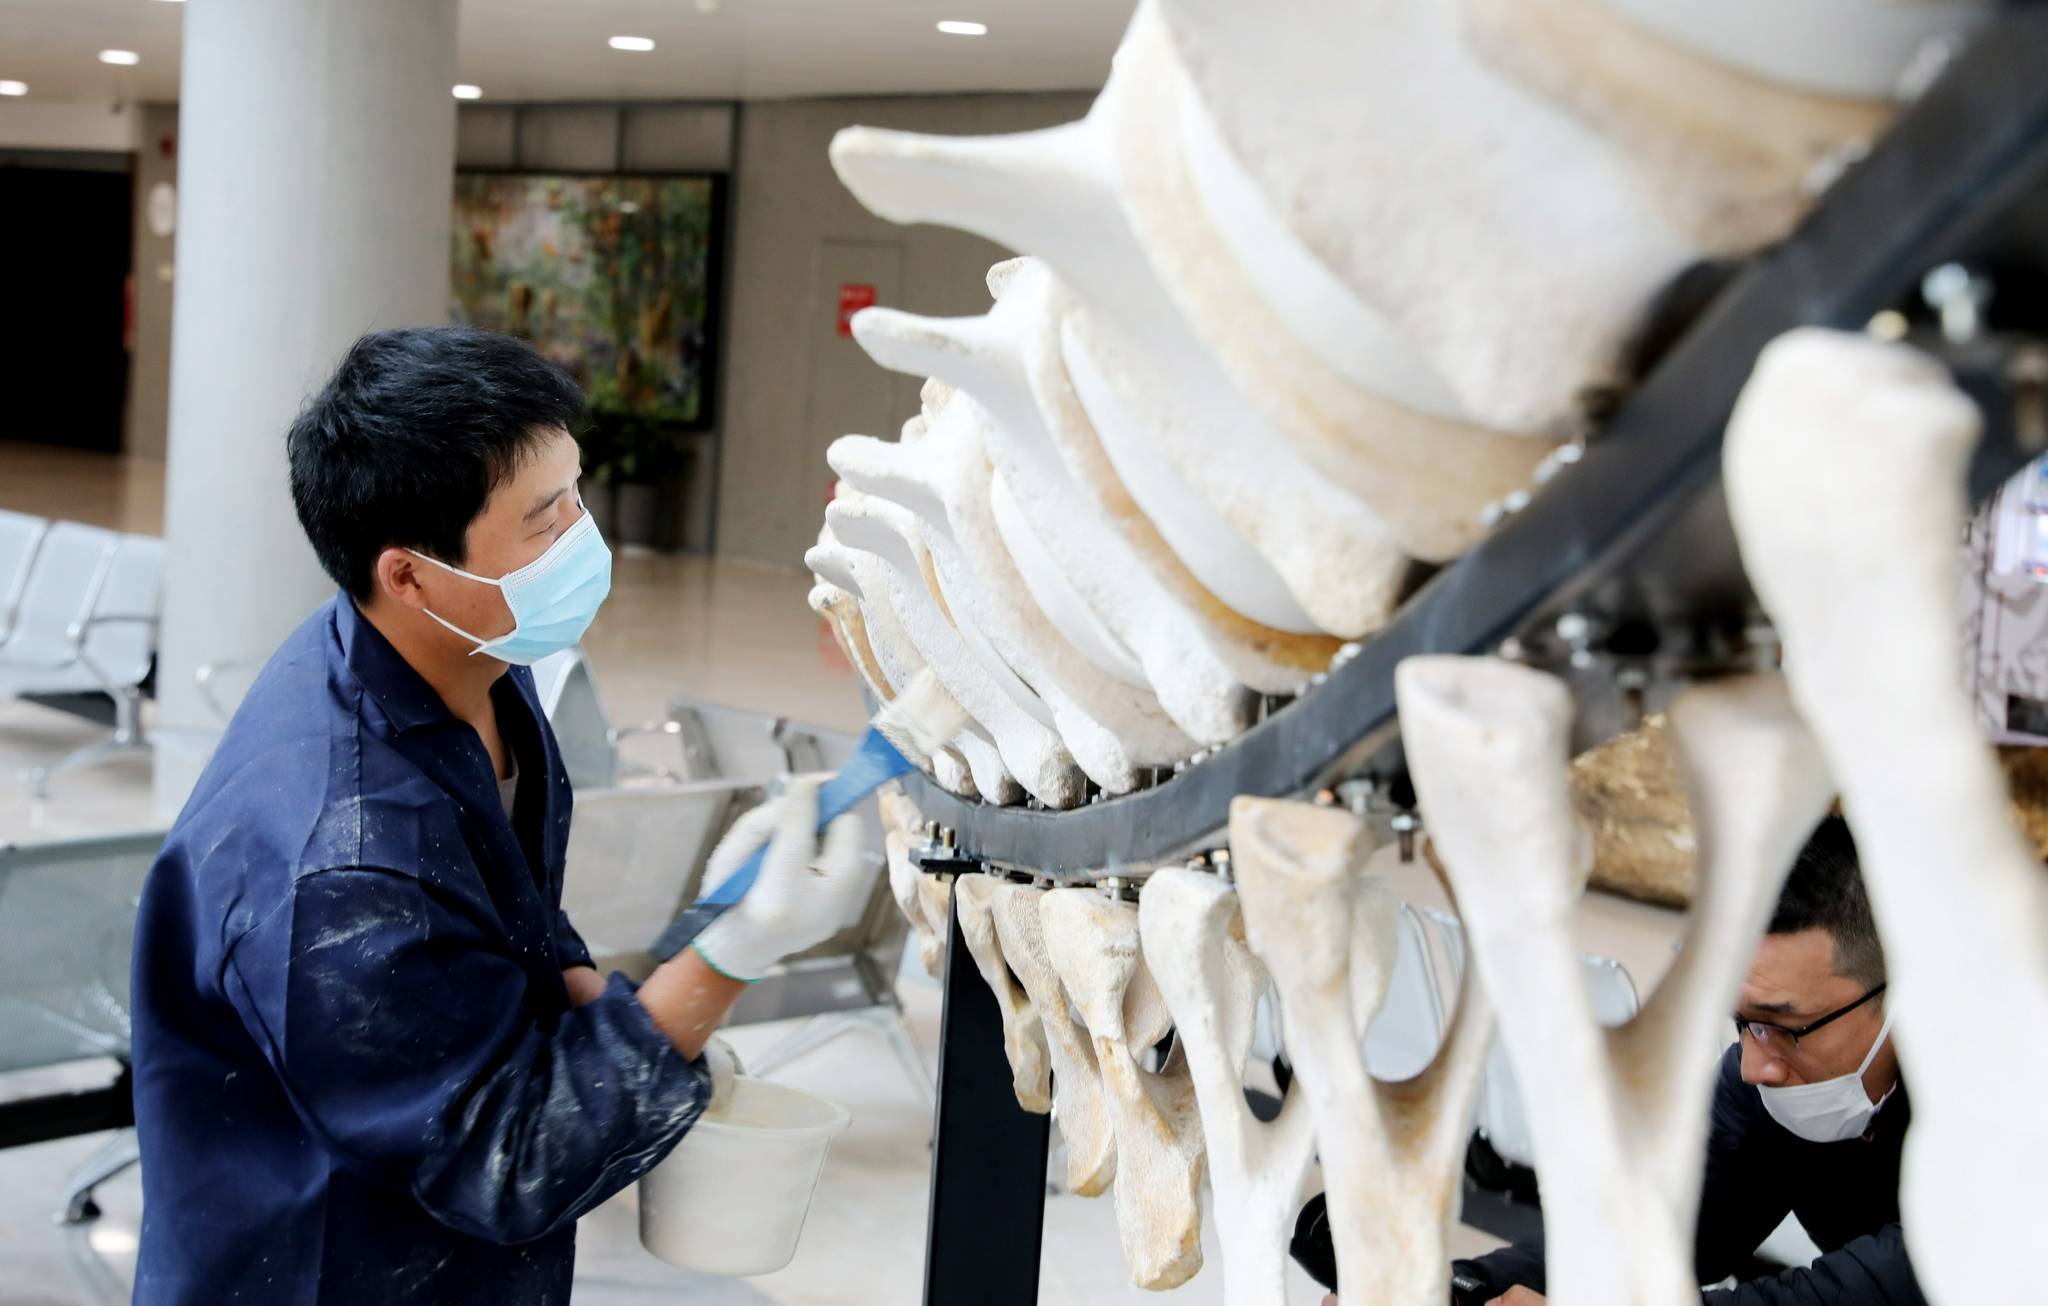 长须鲸骨骼标本在上海自然博物馆搭建完成